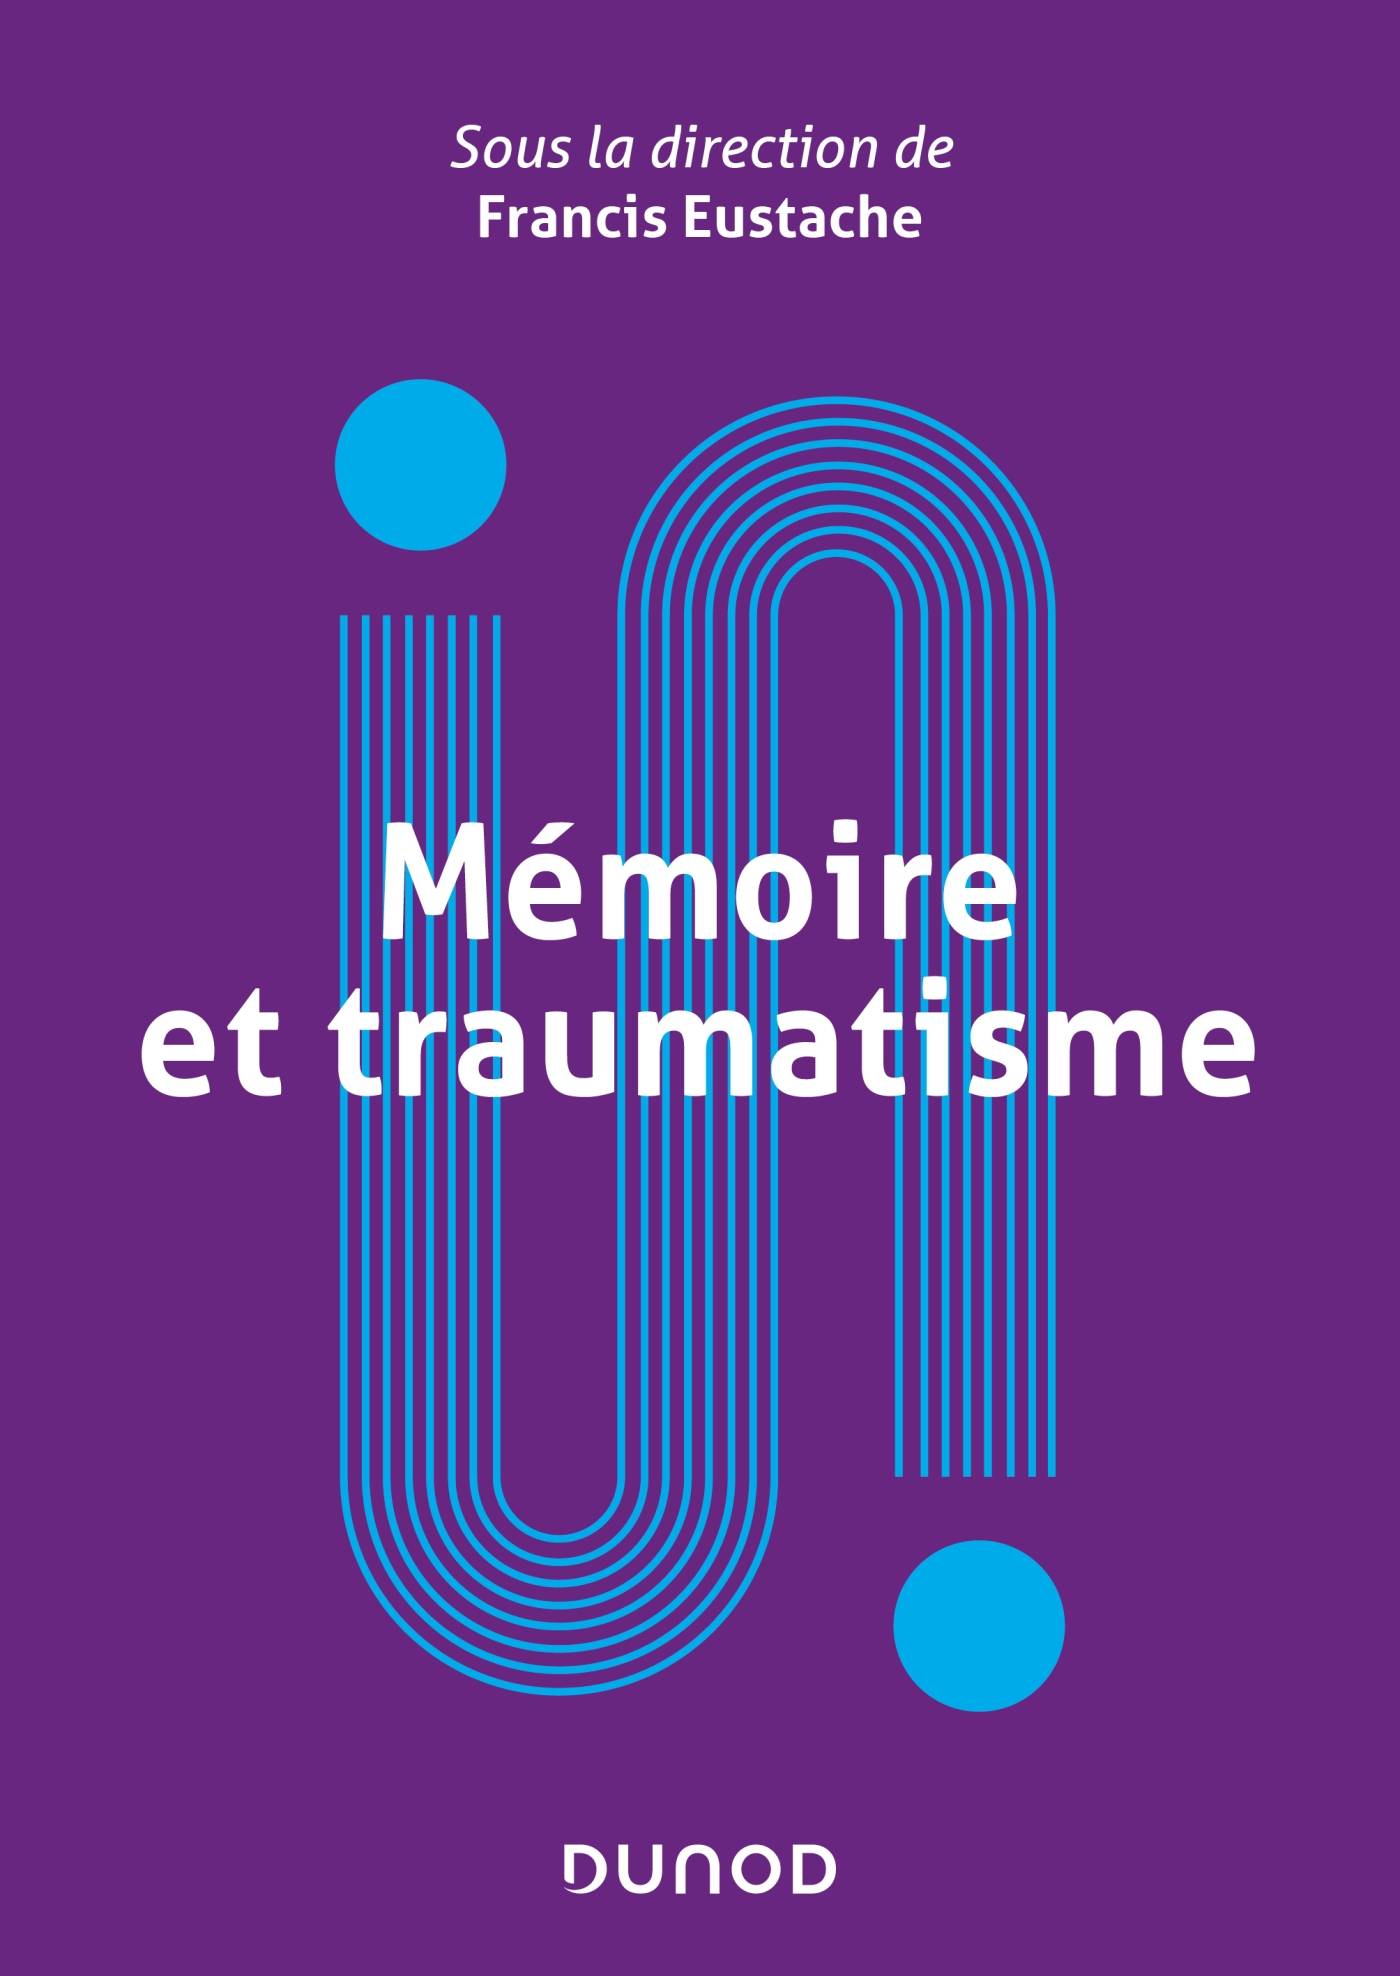 Couverture du livre Mémoire et traumatisme paru aux Editions Dunod